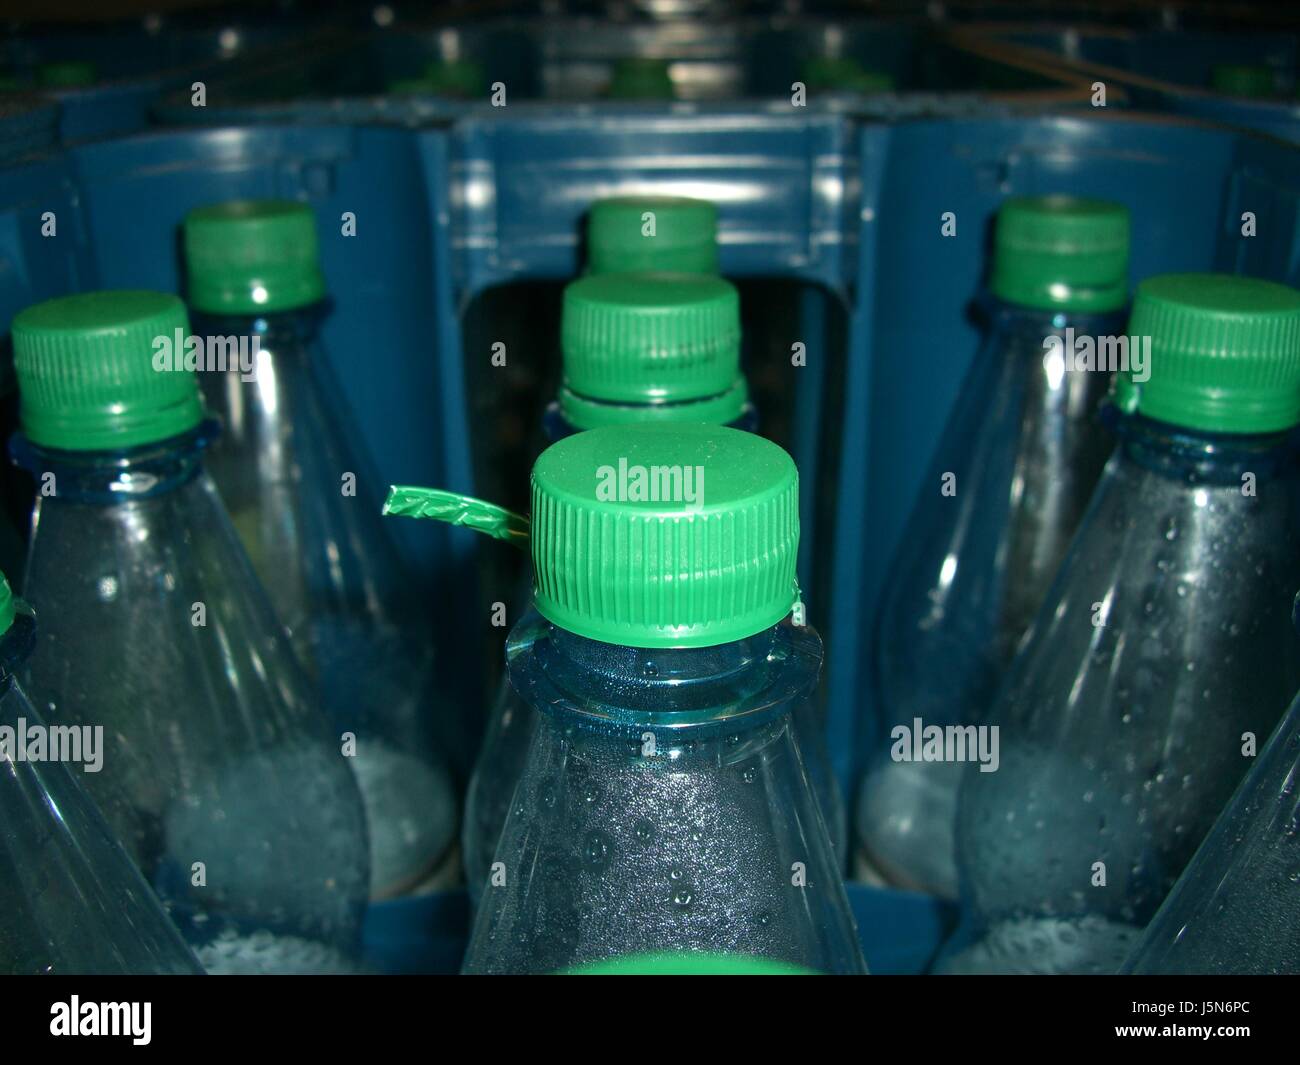 Flaschen Box Kassen Leergut Kaution Flasche Pfand verwenden Haustier  plastik Stockfotografie - Alamy